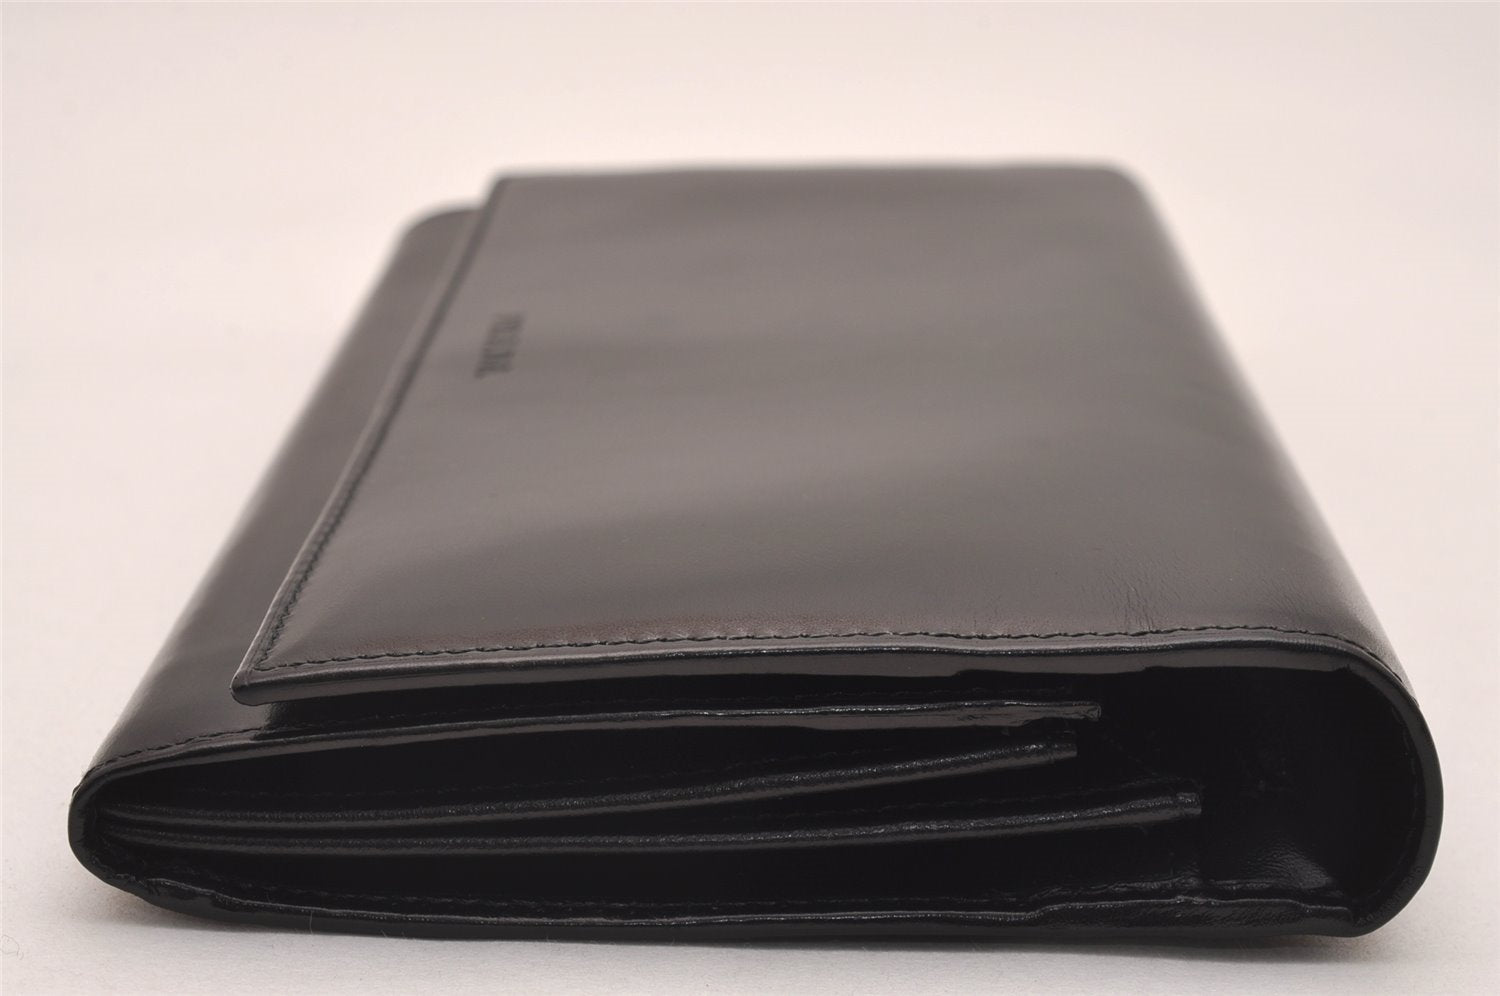 Authentic PRADA Vintage Leather Long Wallet Purse Black Box 4423J